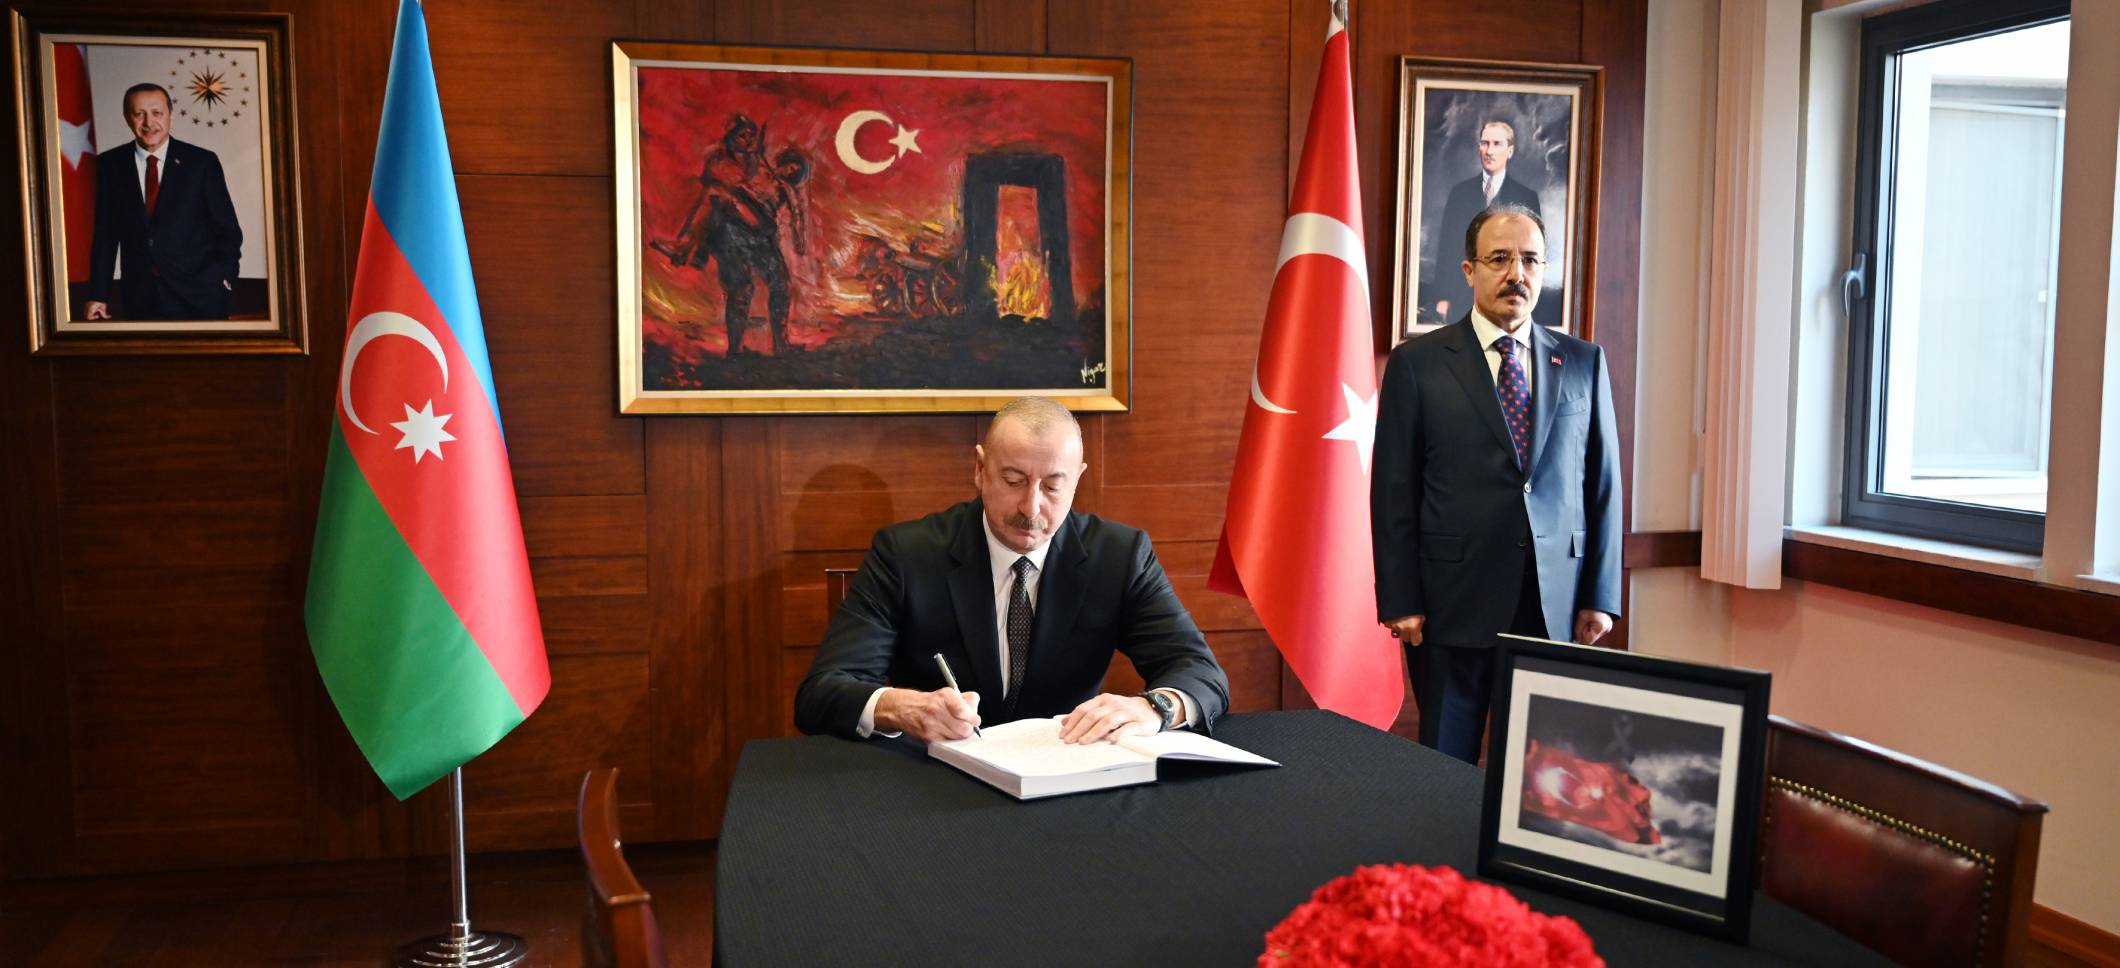 Ильхам Алиев посетил посольство Турции в Азербайджане, выразил соболезнования в связи с многочисленными человеческими жертвами